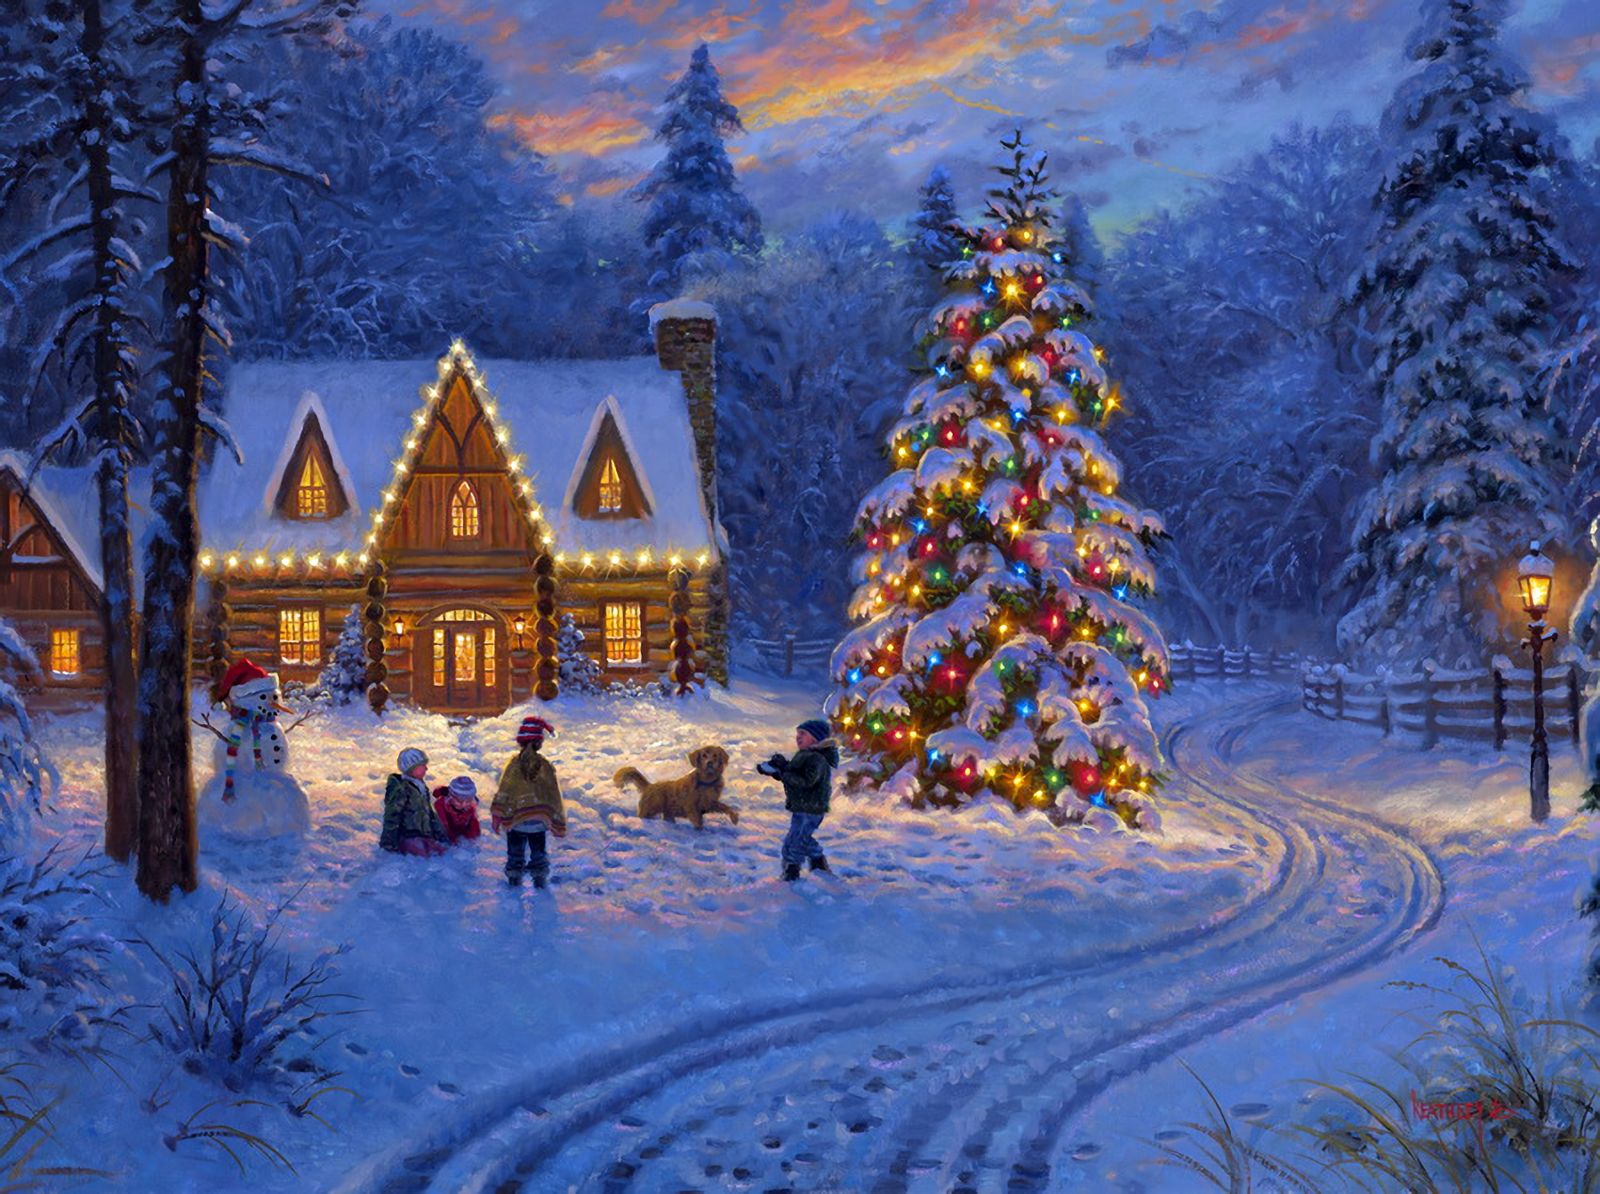 Скачать обои бесплатно Снег, Свет, Рождество, Дом, Снеговик, Рождественская Елка, Ребёнок, Праздничные картинка на рабочий стол ПК